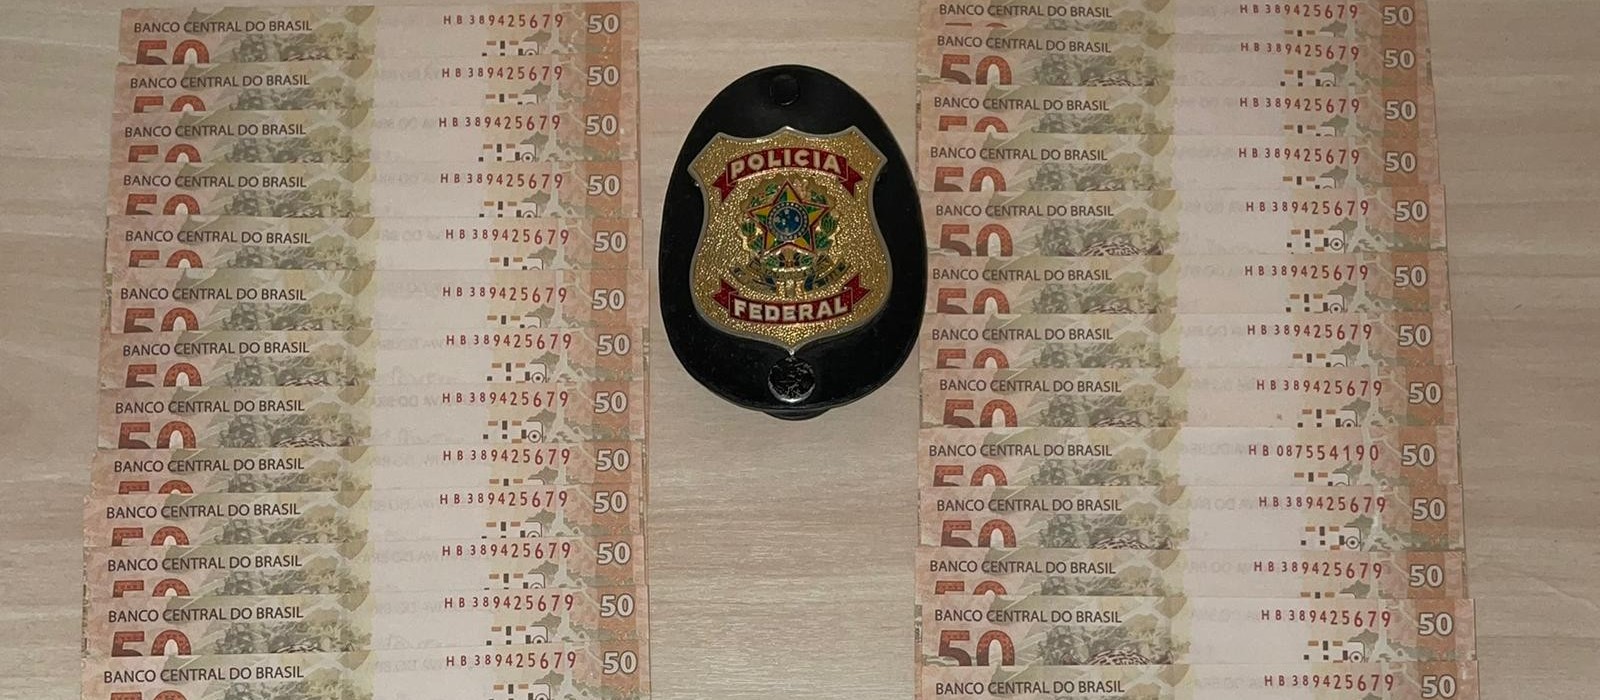 Polícia Federal prende homem na região de Maringá com cédulas falsas de R$ 50